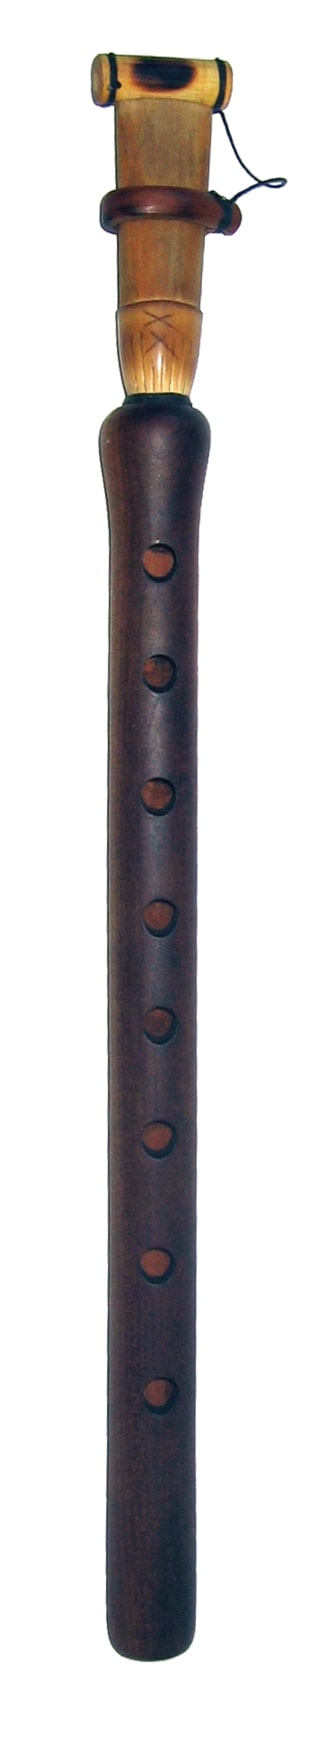 Na zdjęciu widnieje duduk, czyli tradycyjny instrument ormiański z grupy aerofonów.